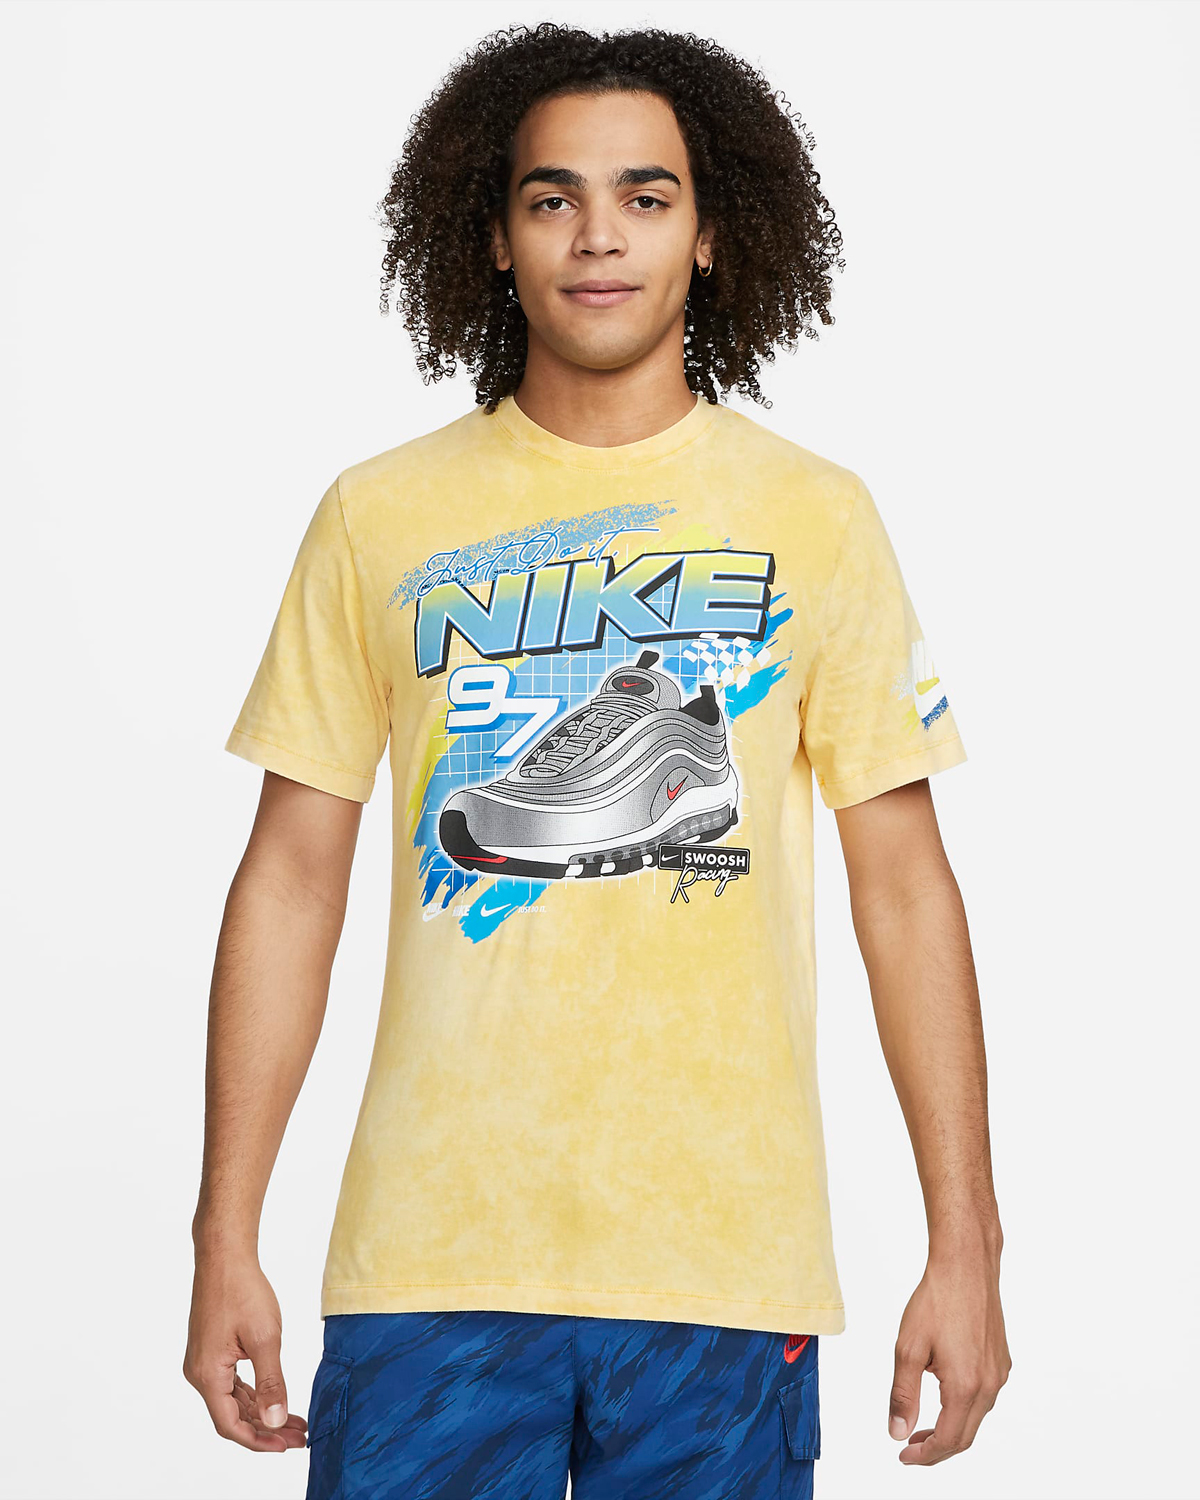 Nike-Air-Max-97-Silver-Bullet-T-Shirt-Yellow